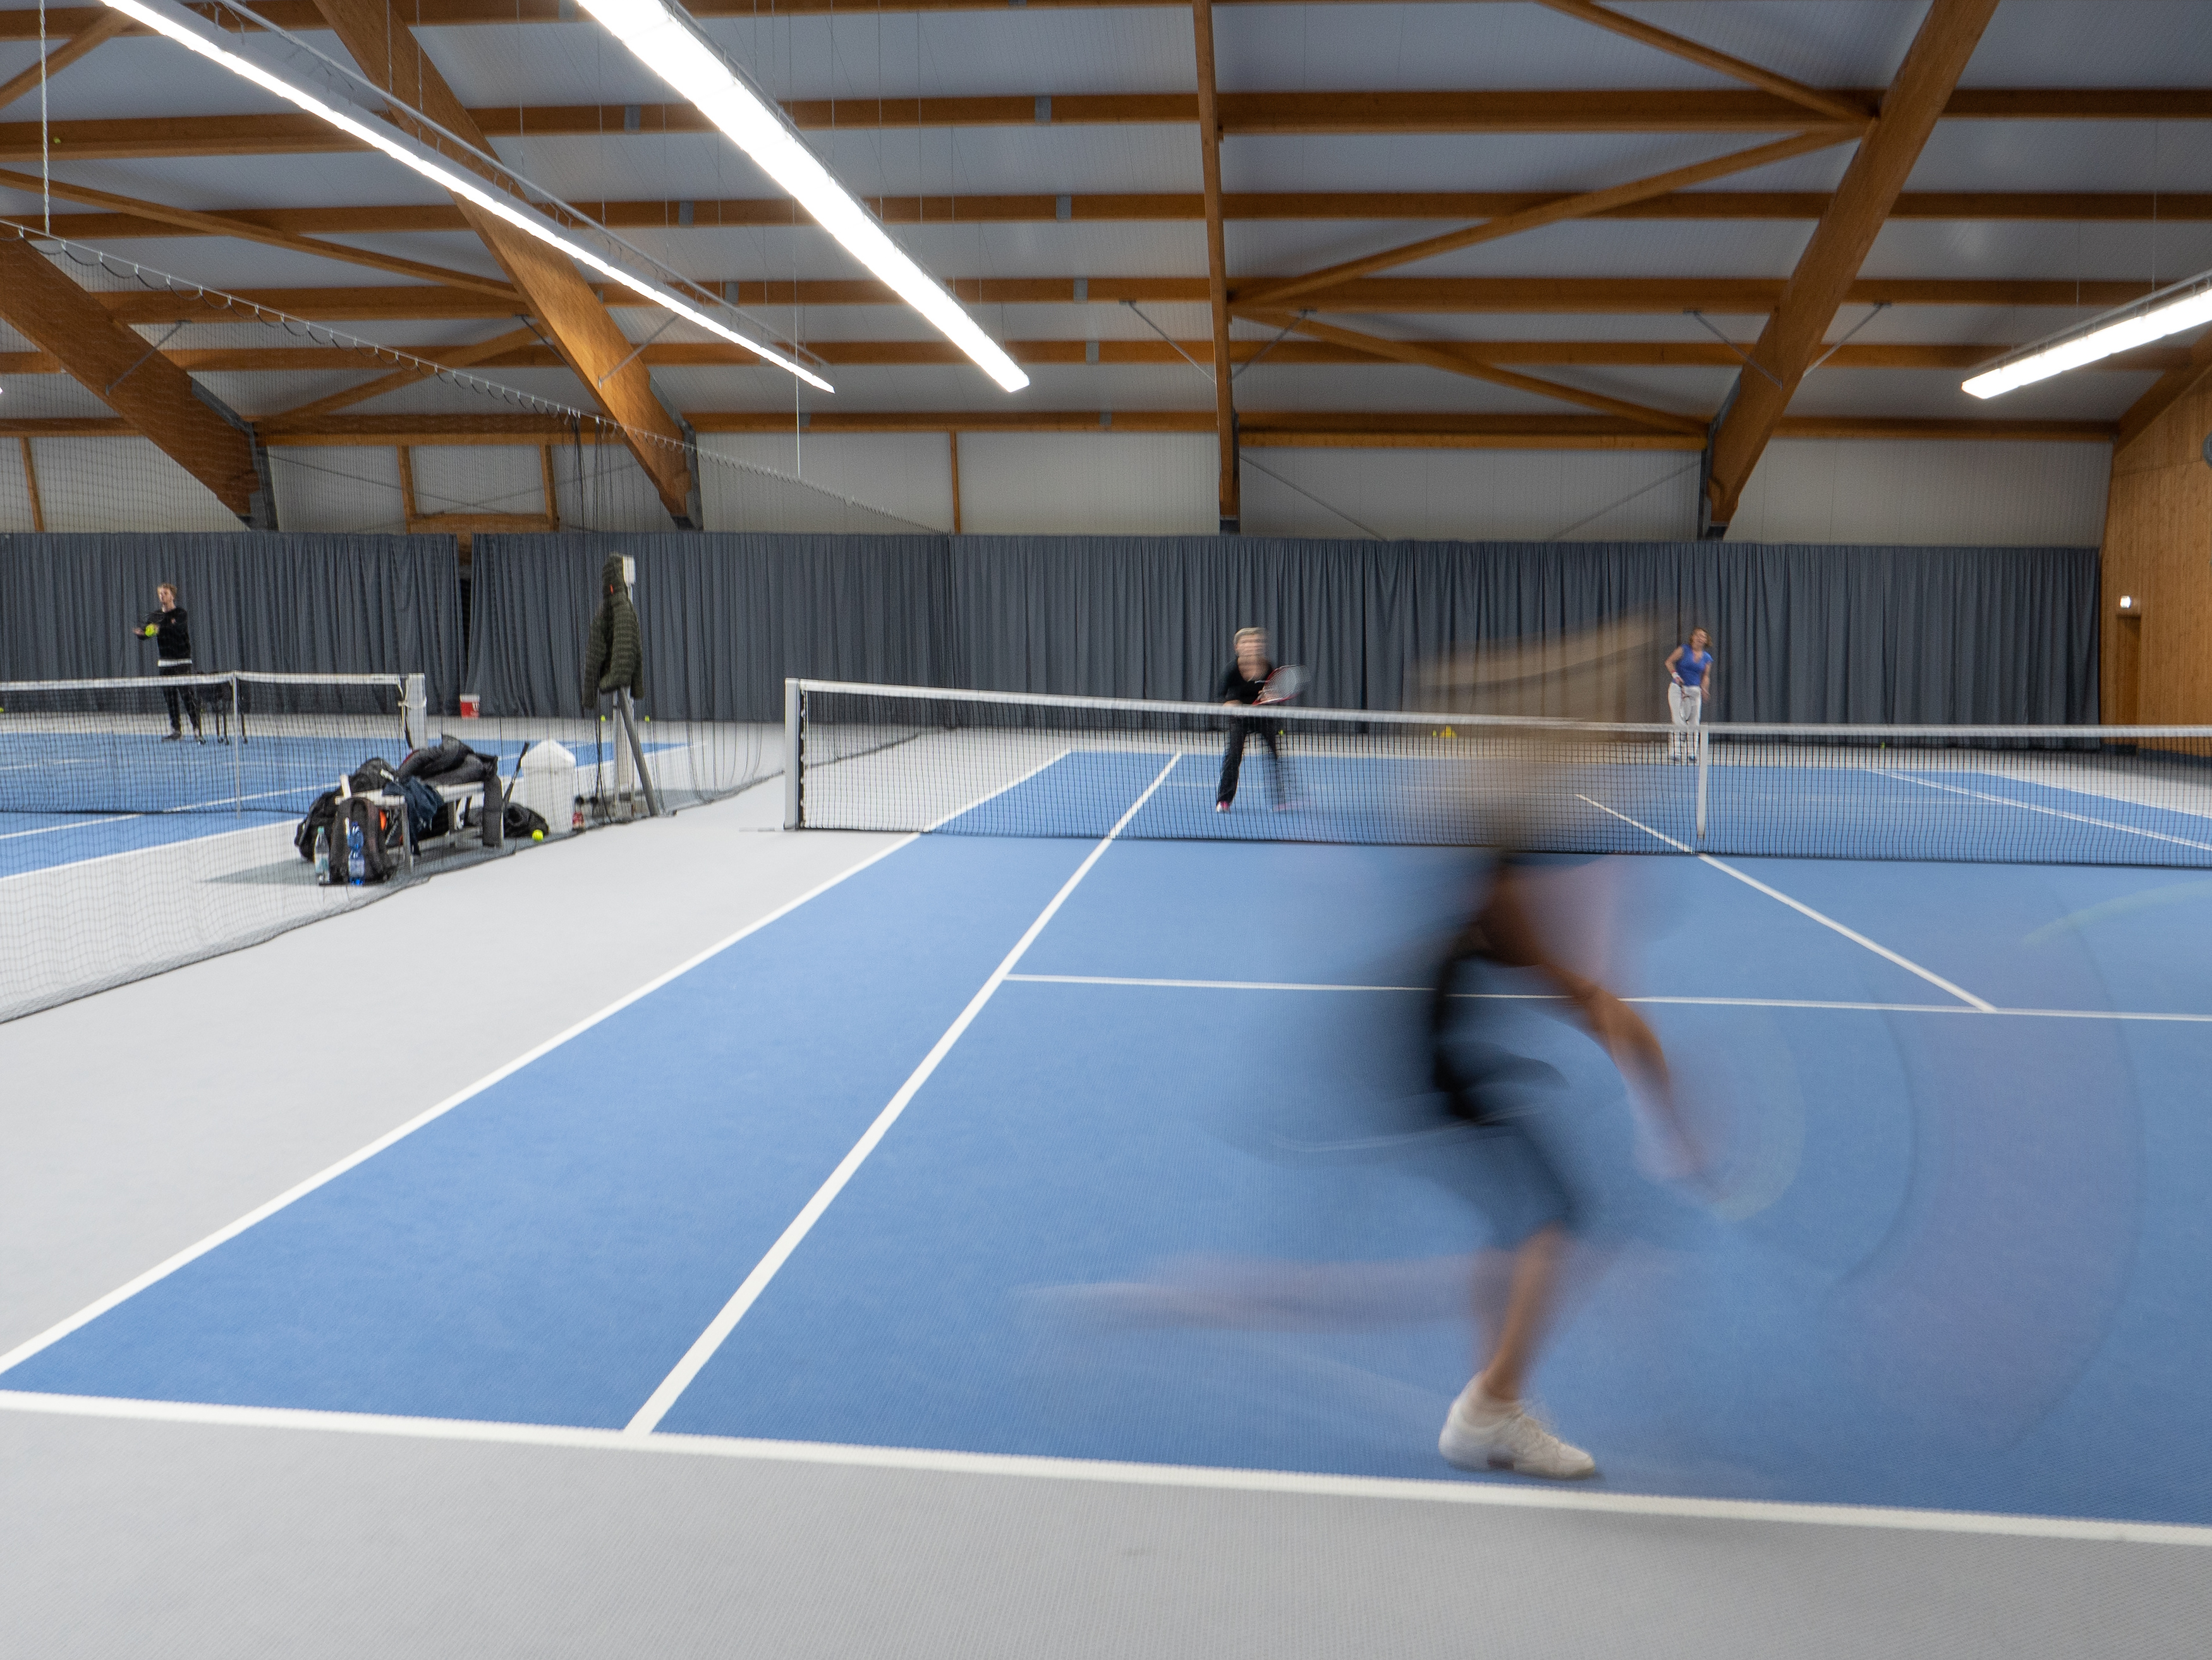 Gelenkschonender Struktur­velour-Boden­belag von SCHÖPP® in der ETUF-Tennis­halle, Essen.